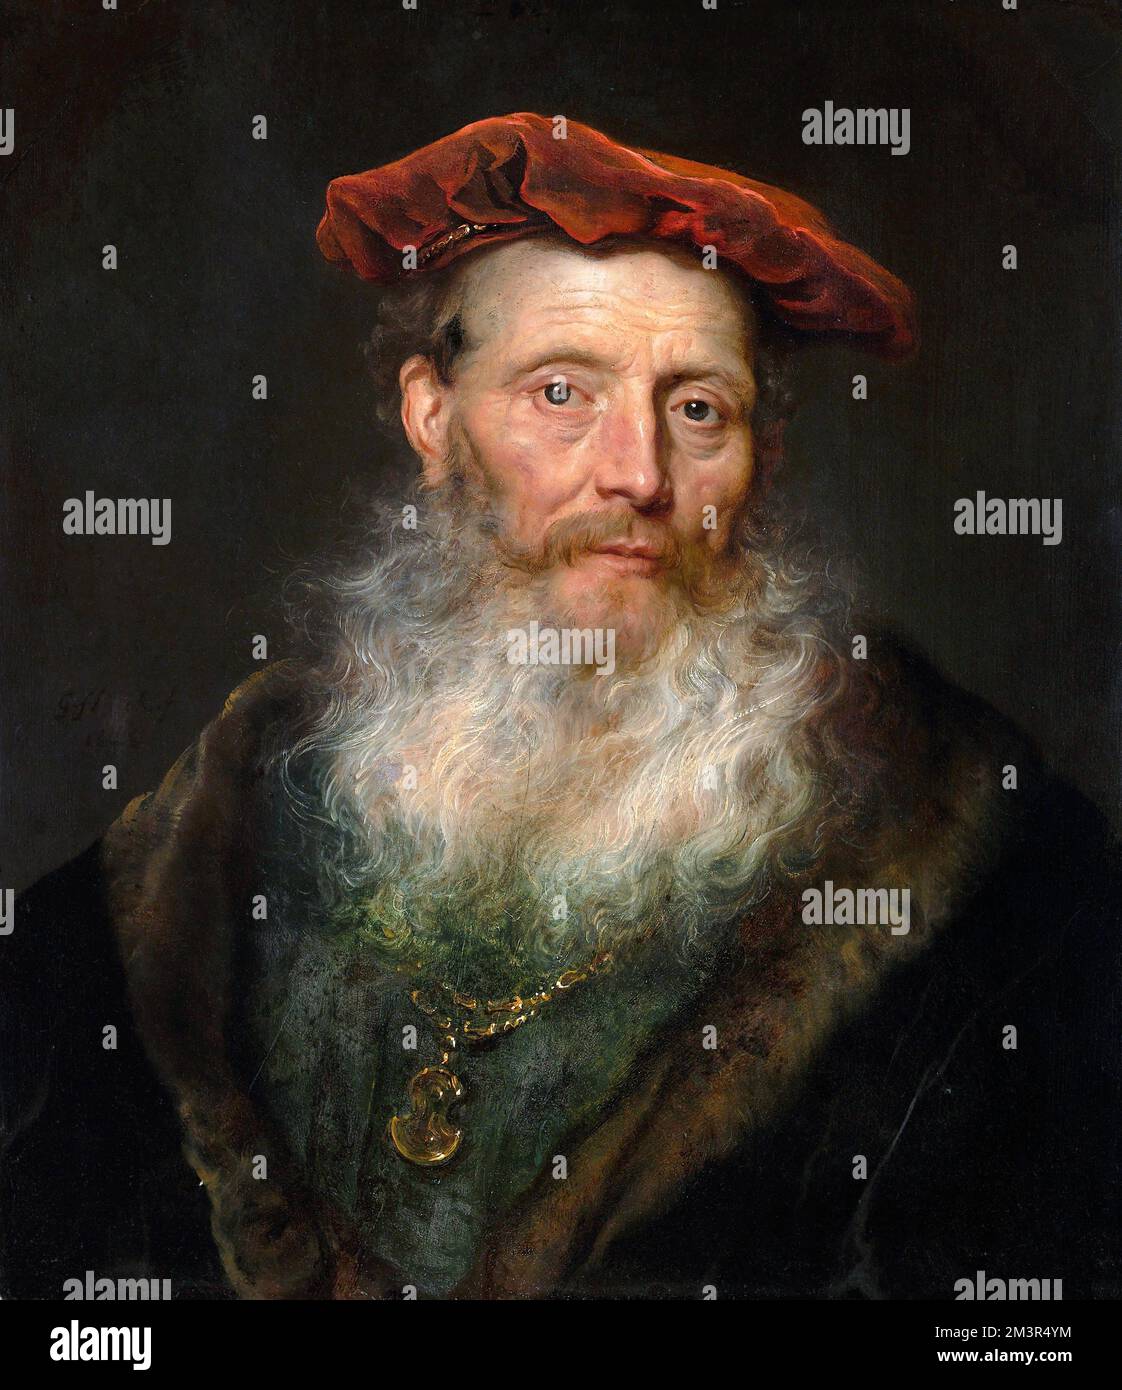 Homme barbu avec une casquette de velours par Govert Flinck (1615-1660), huile sur bois, vers 1645 Banque D'Images